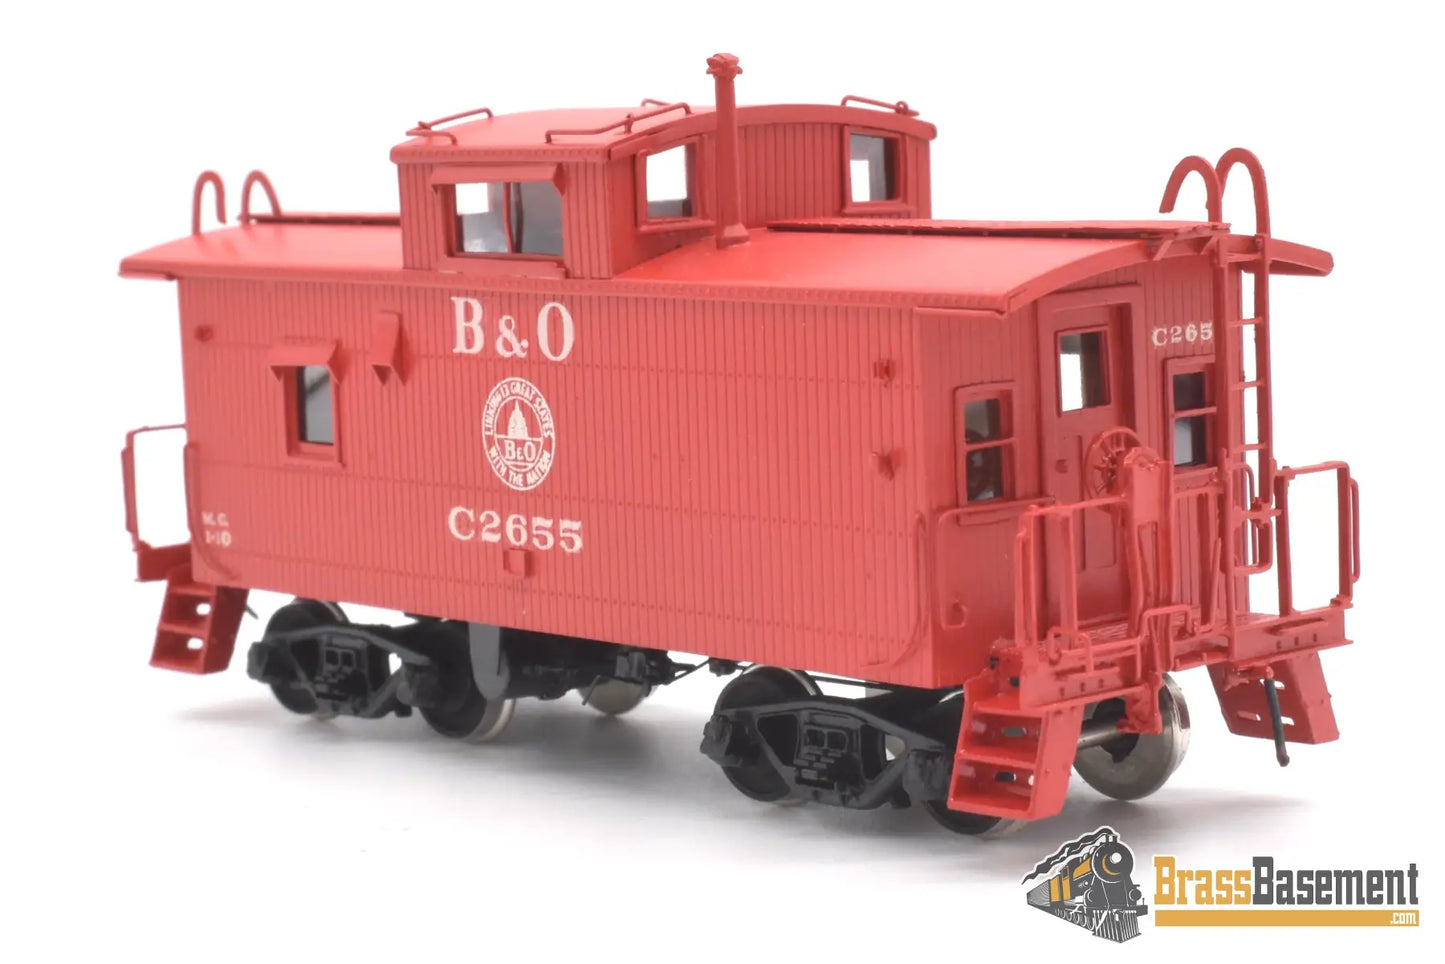 Ho Brass - Omi 3804.1 Baltimore & Ohio B&O I - 10 Caboose C2655 Post Rebuild